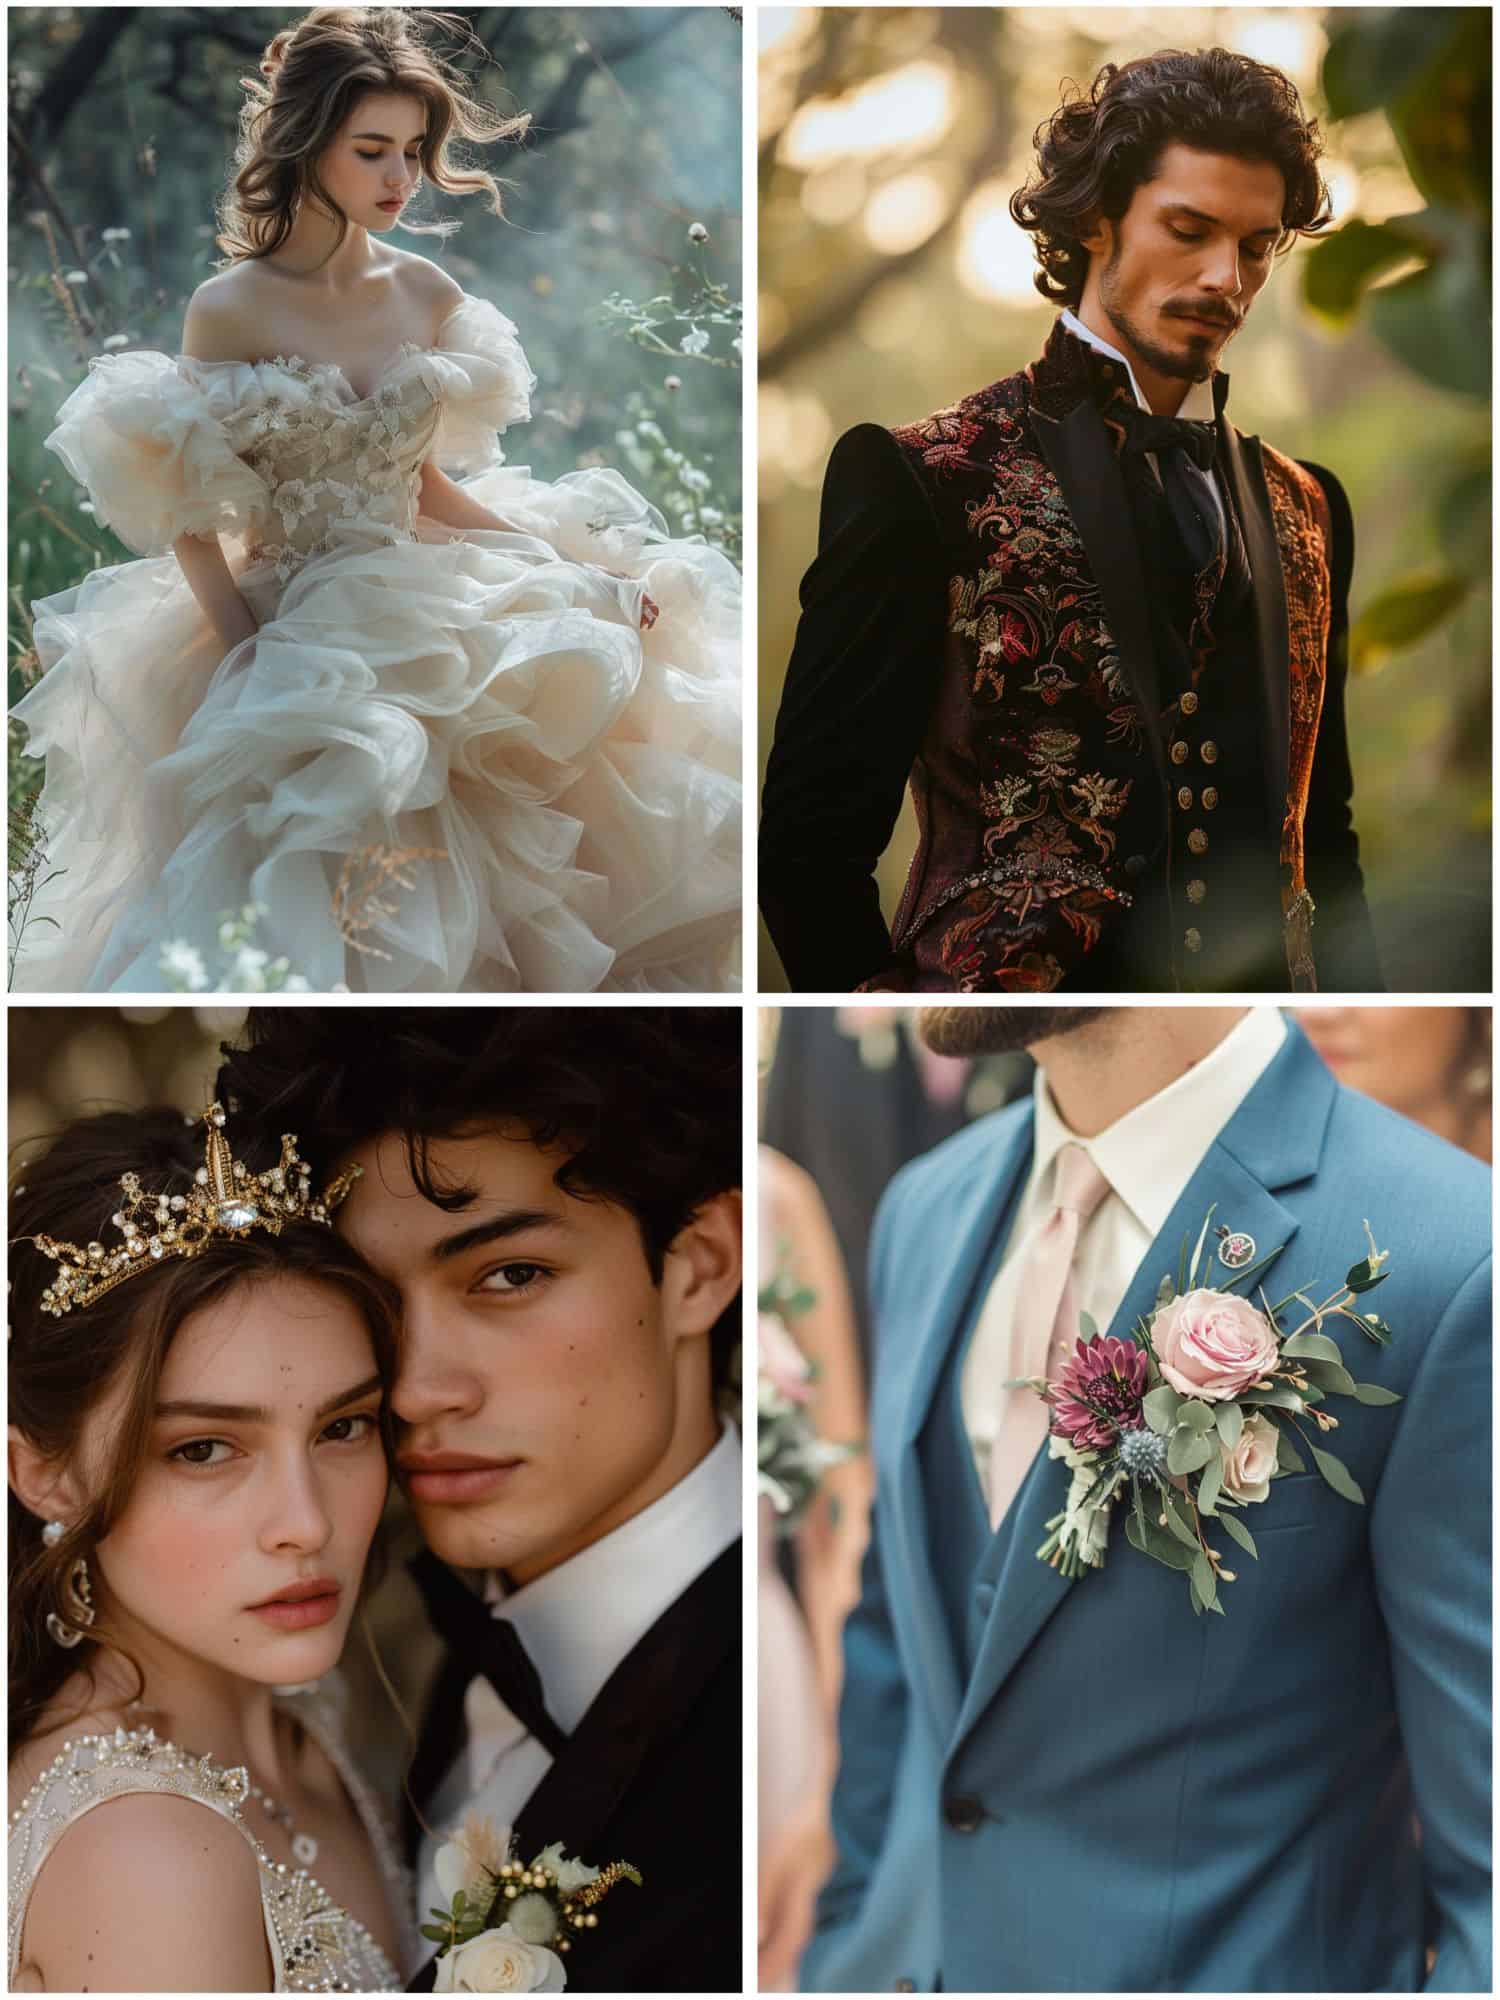 fairy tale wedding theme ideas for attire